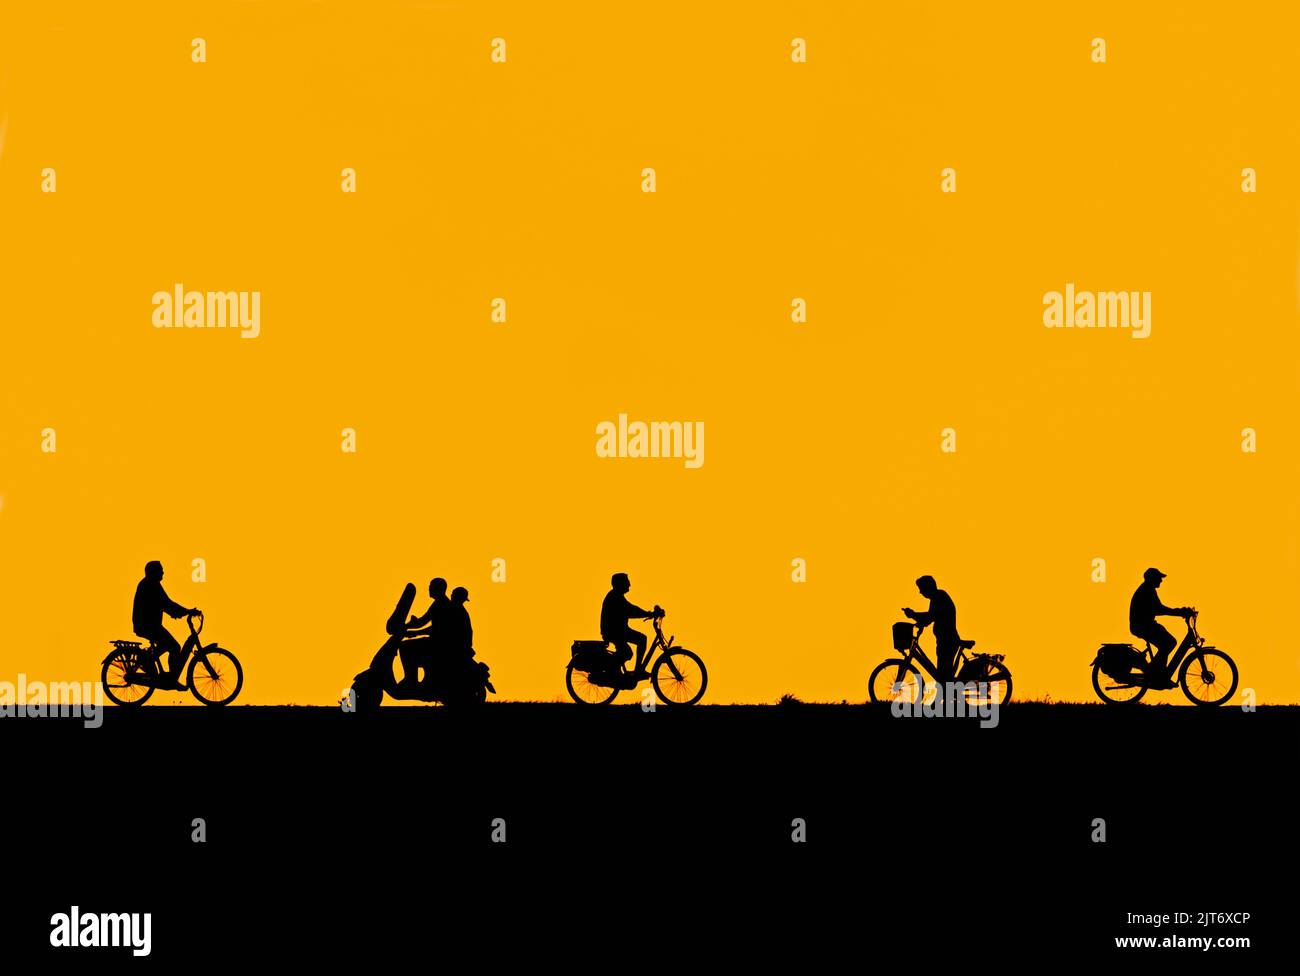 In estate, lo scooter passa accanto ai ciclisti e l'uomo in bicicletta per controllare il suo smartphone che si trova in una silhouette contro il cielo arancione del tramonto Foto Stock